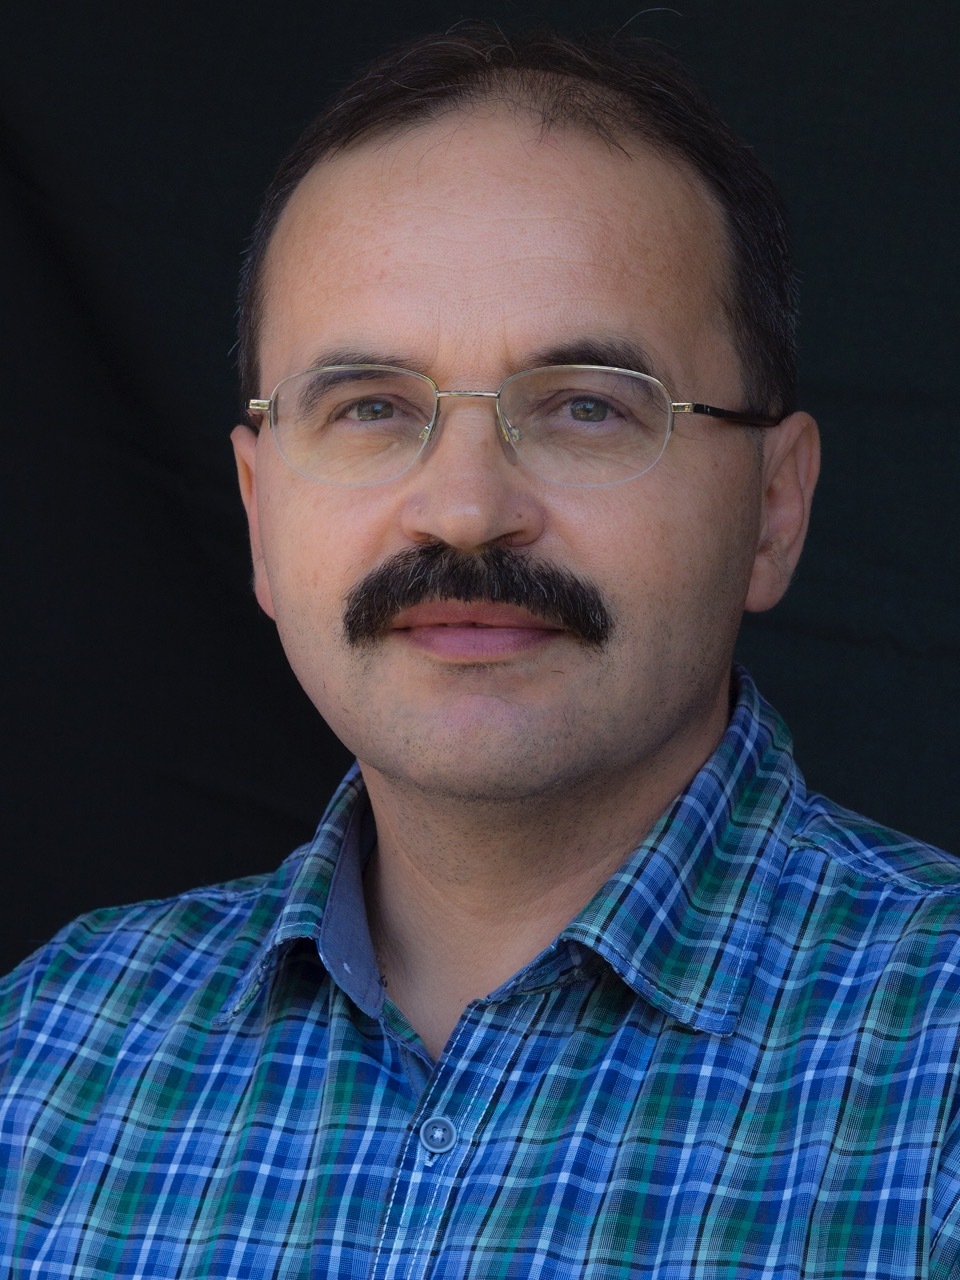 Dr. Pituk Mihály matematikus